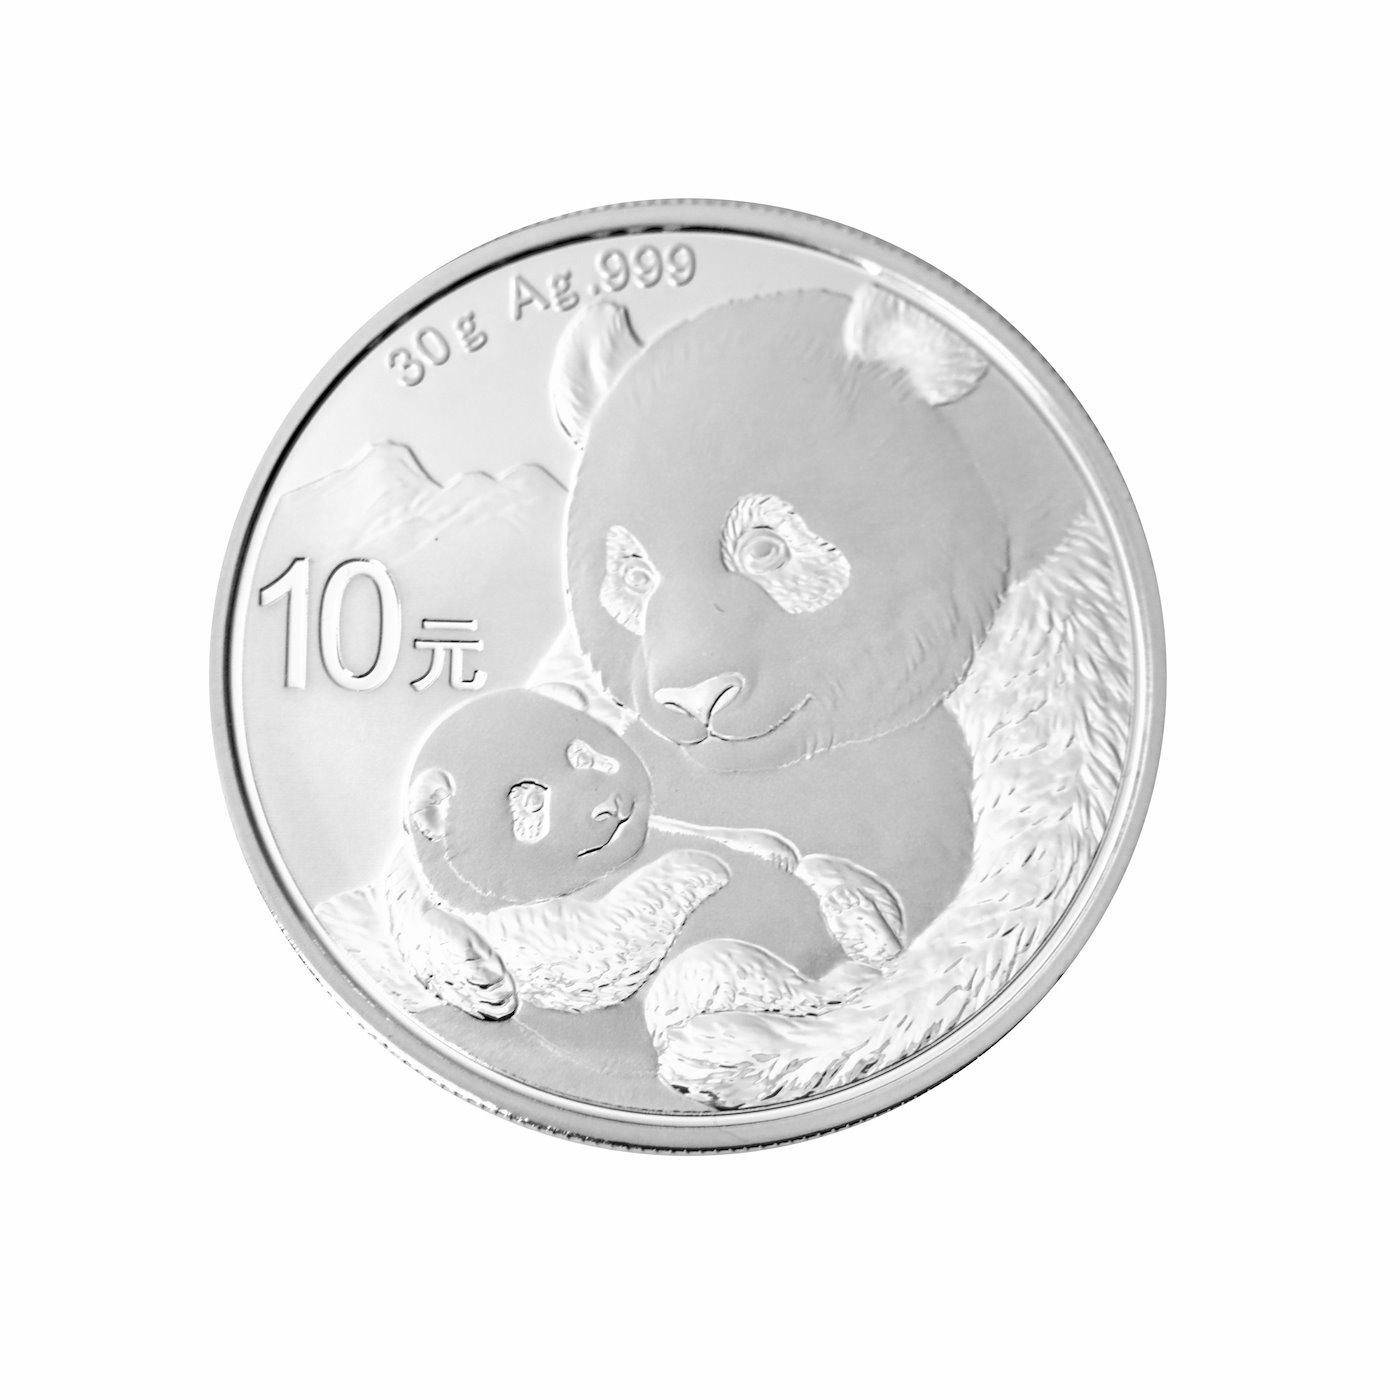 Mince - Stříbrná investiční mince Panda PROOF,stříbro 999/1000. Hrubá hmotnost mince 30g.